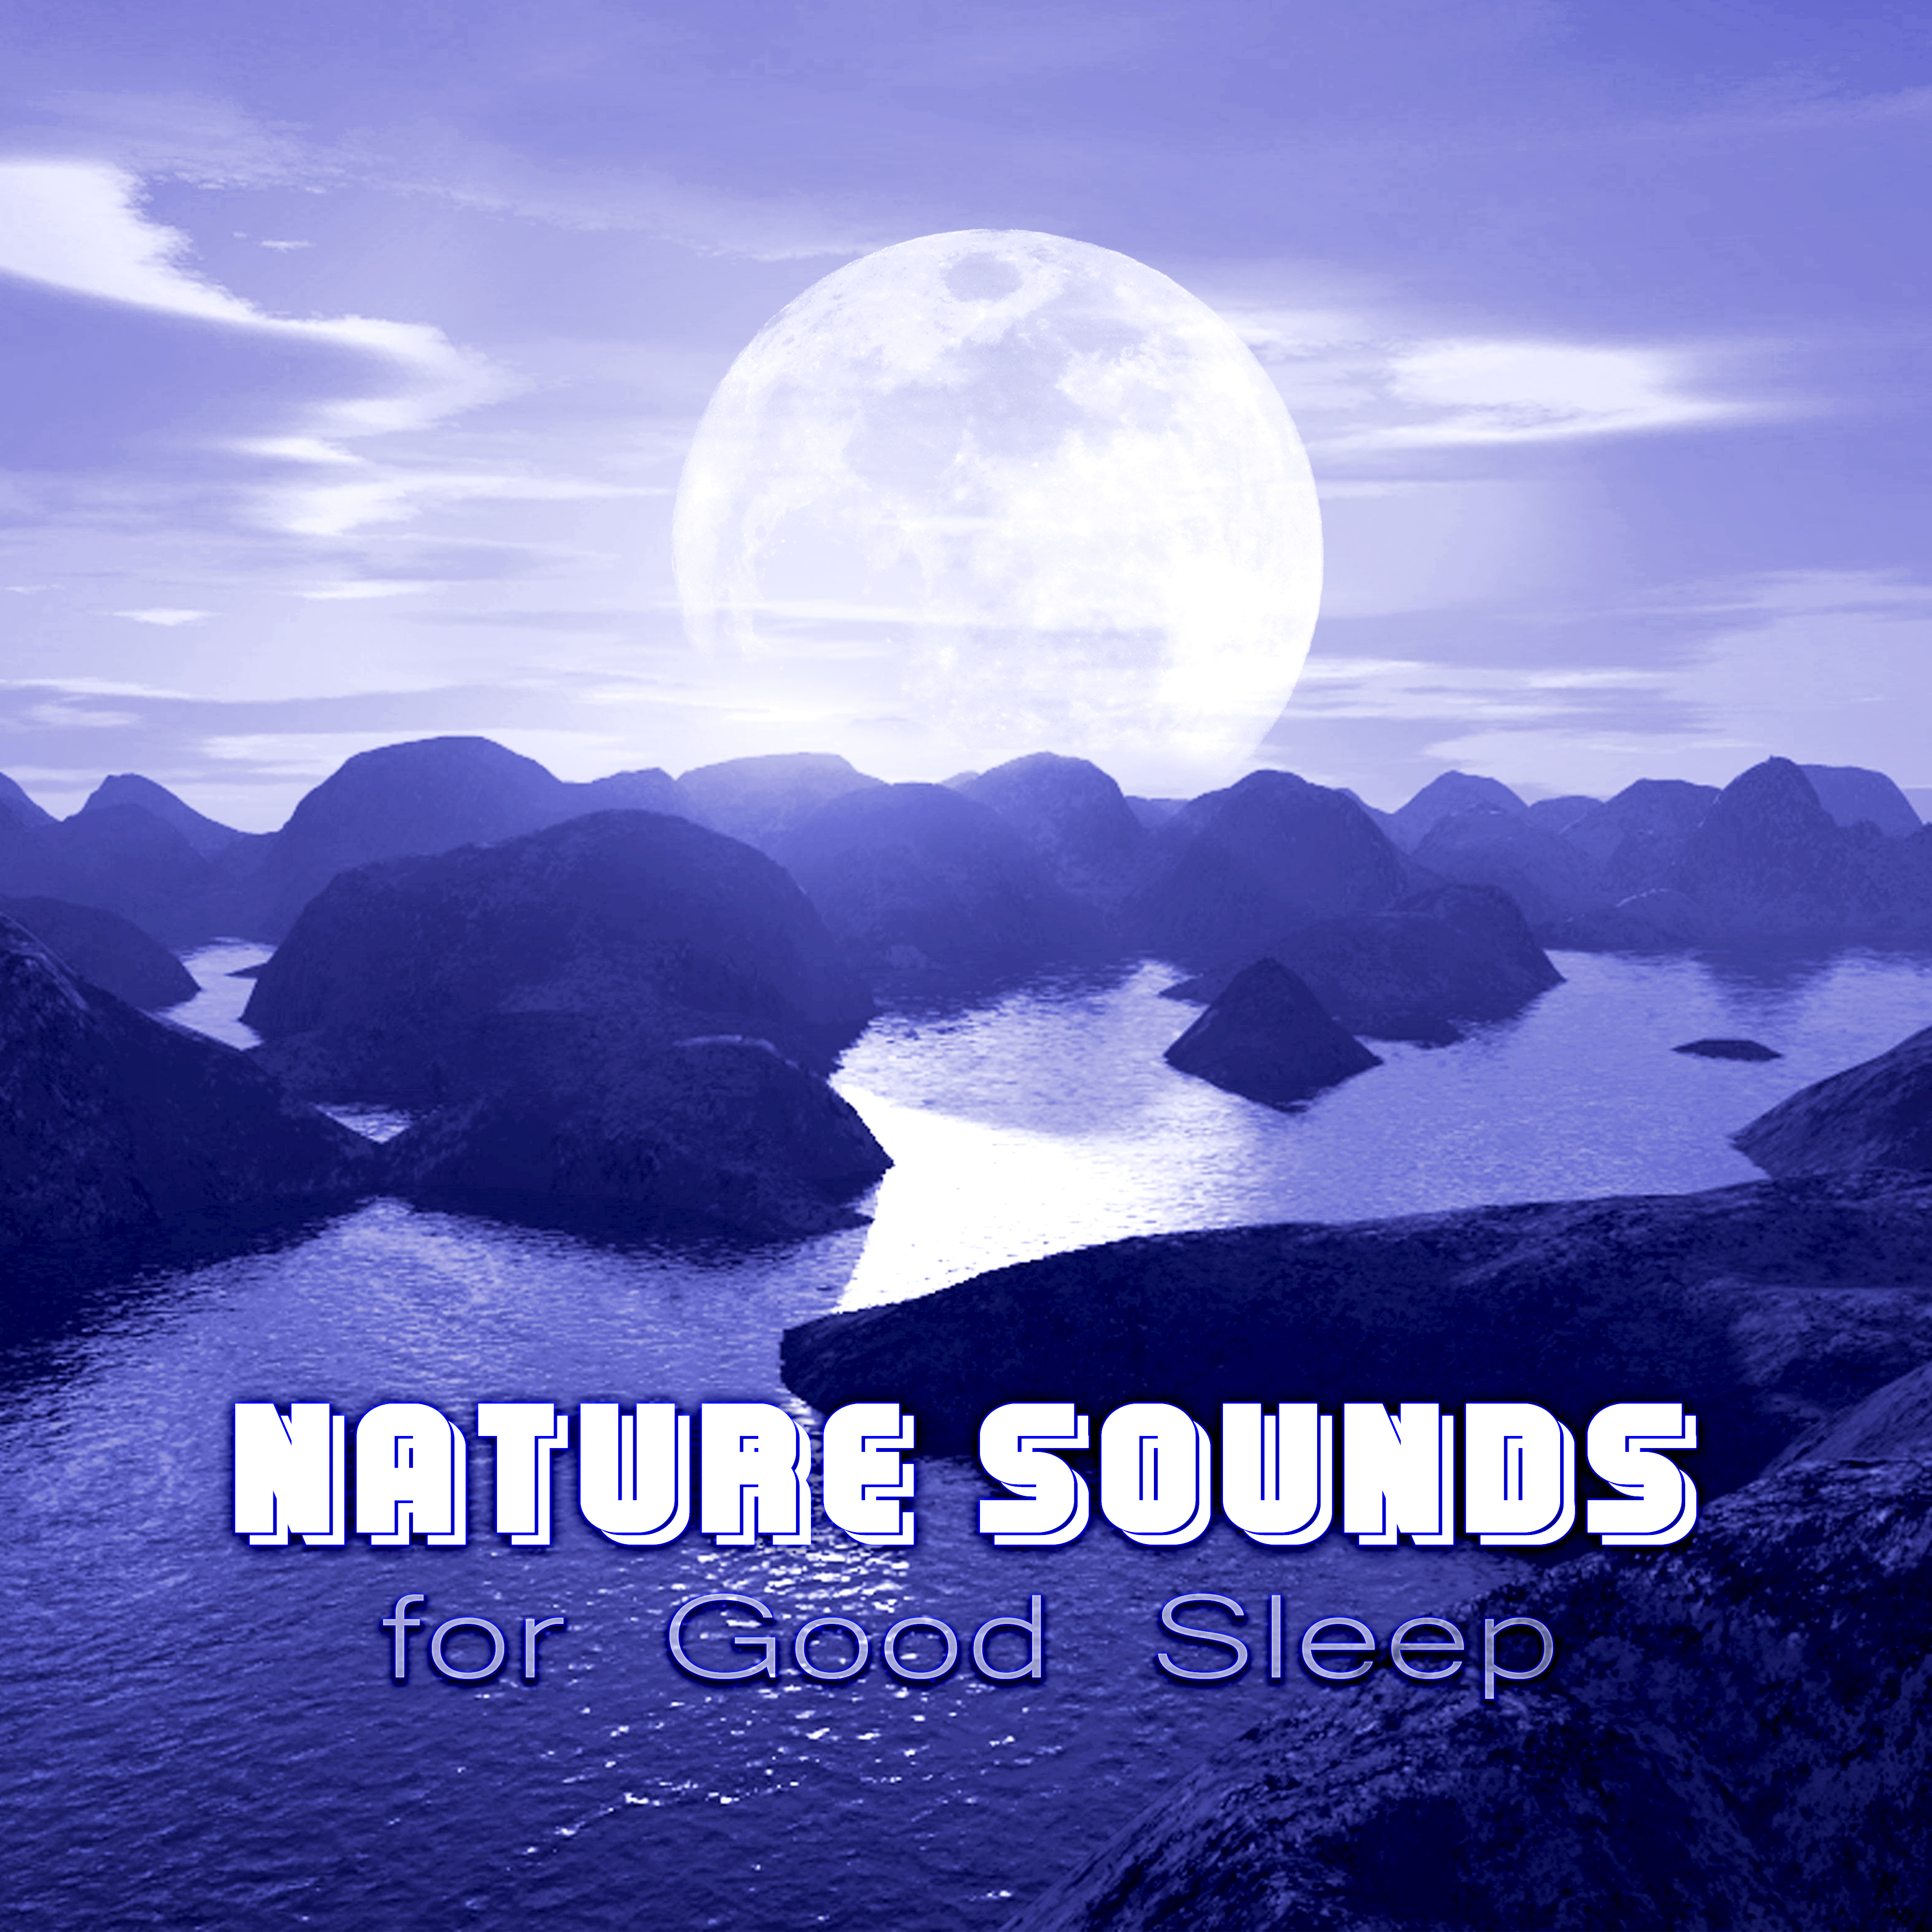 Nature Sounds for Good Sleep